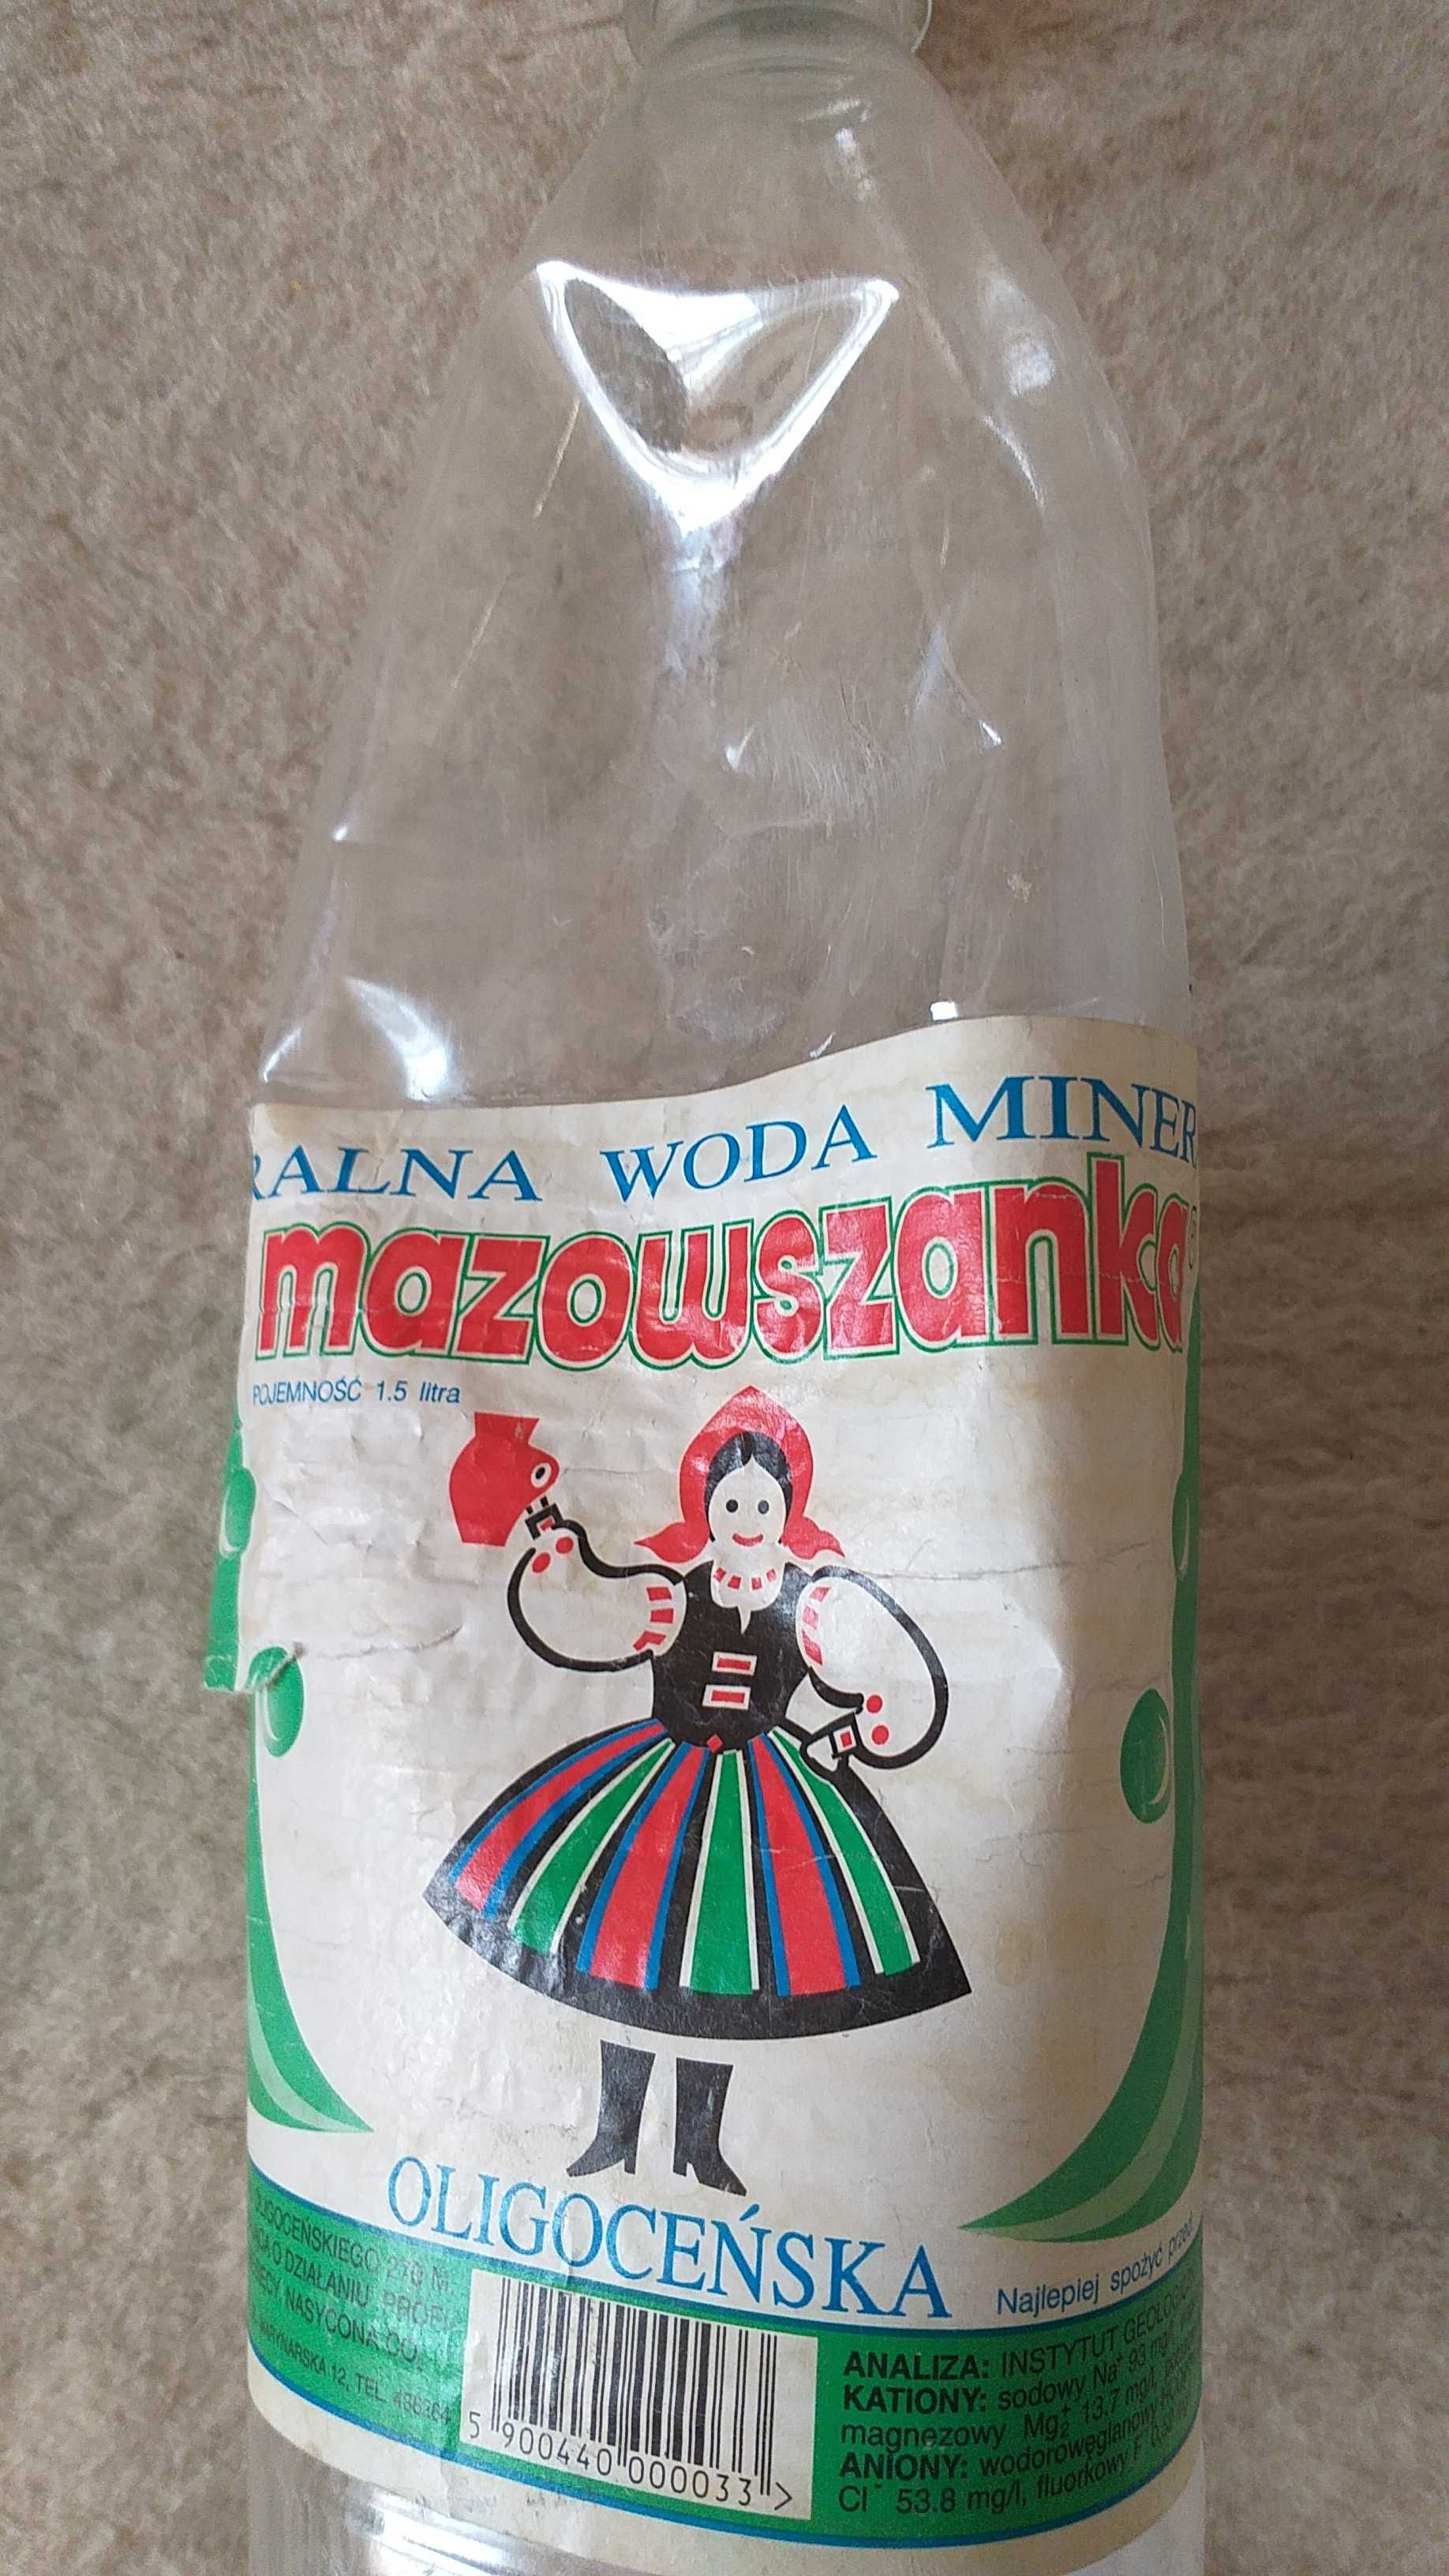 butelka retro Mazowszanka z lat 70tych